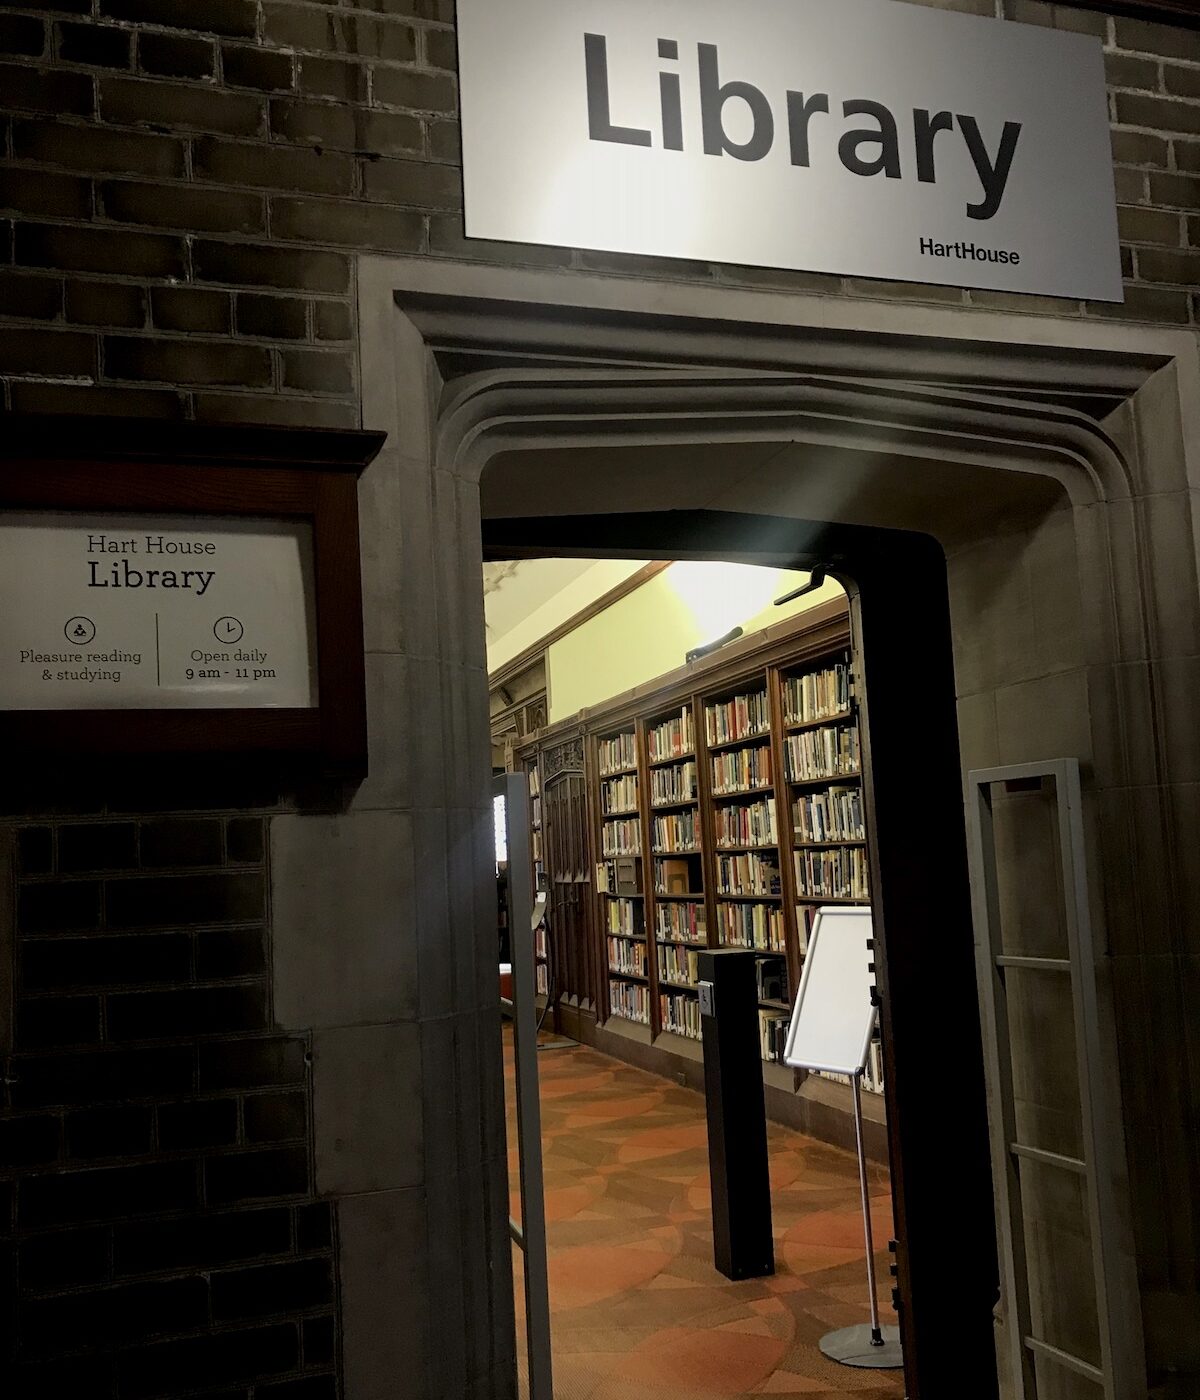 トロント大学のキャンパスでハリーポッターみたいな図書館